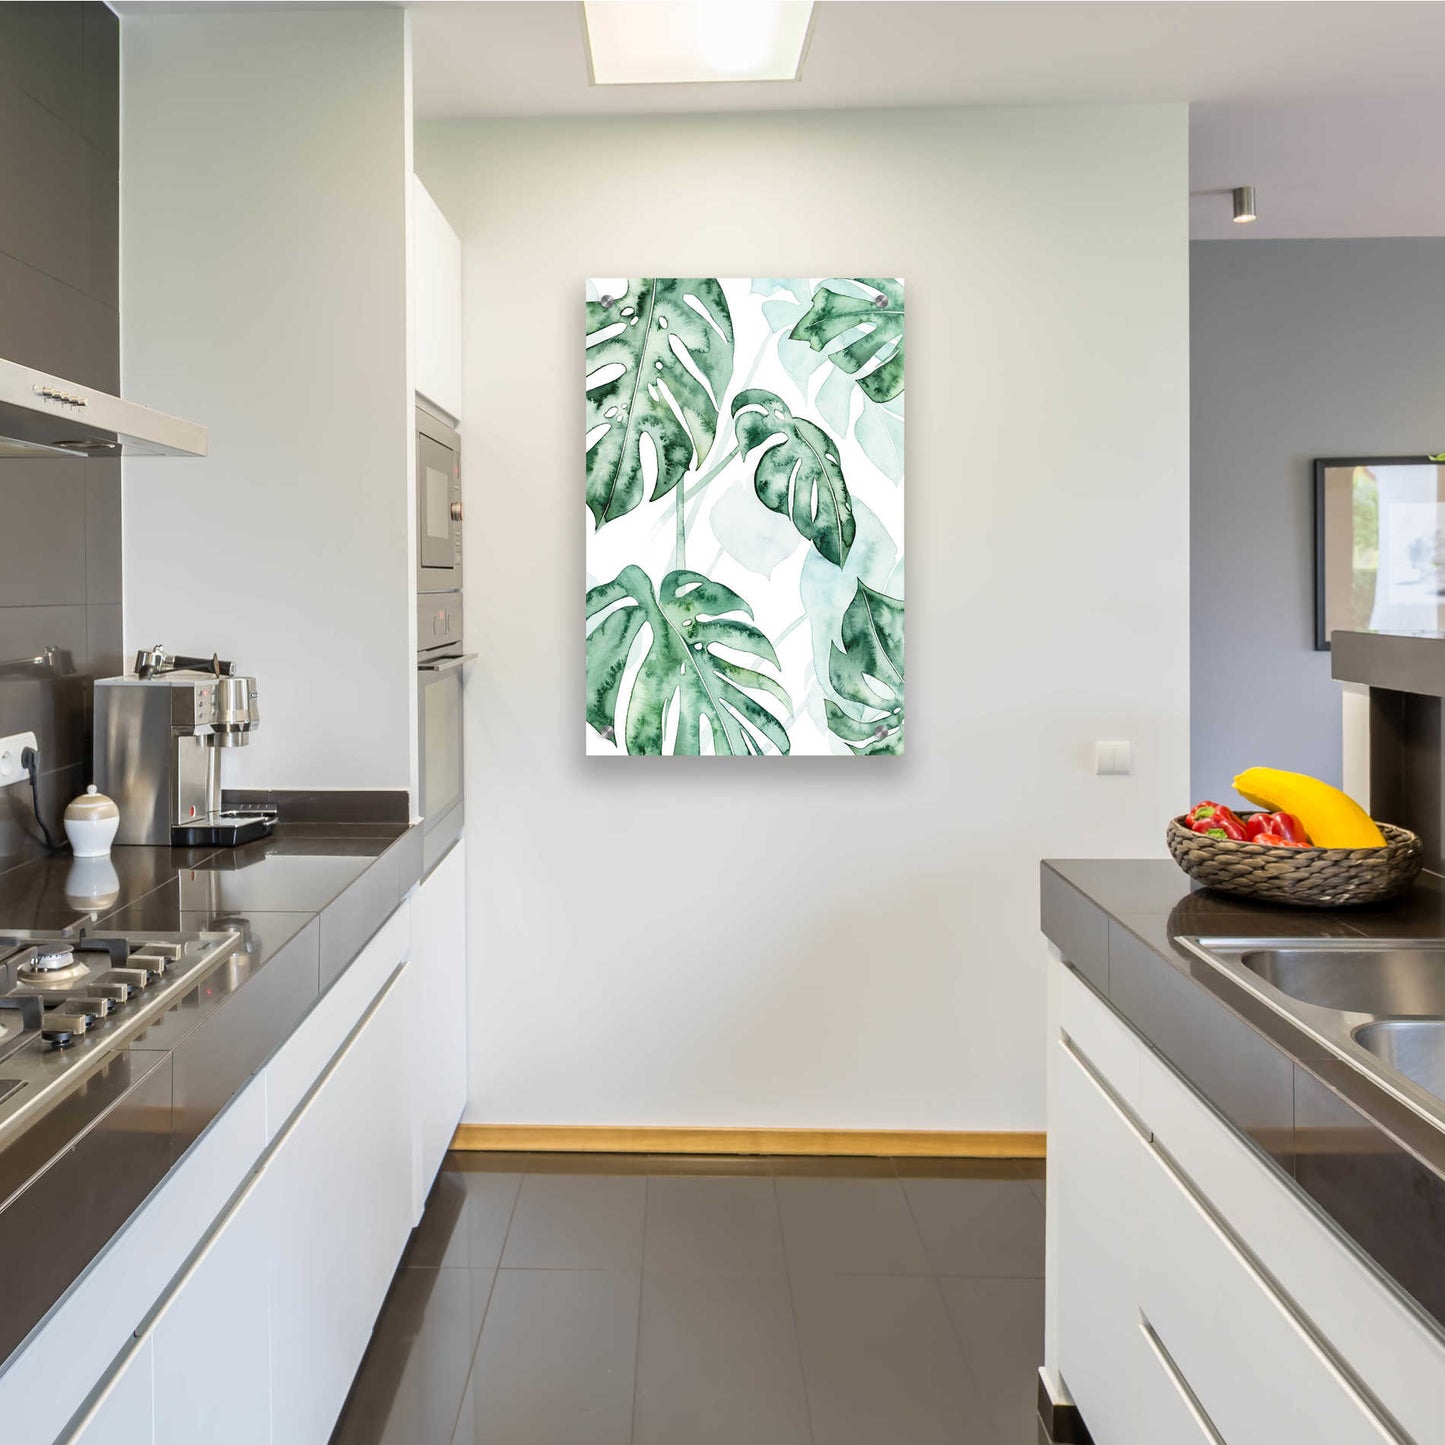 Epic Art 'Split Leaf II' by Grace Popp, Acrylic Glass Wall Art,24x36